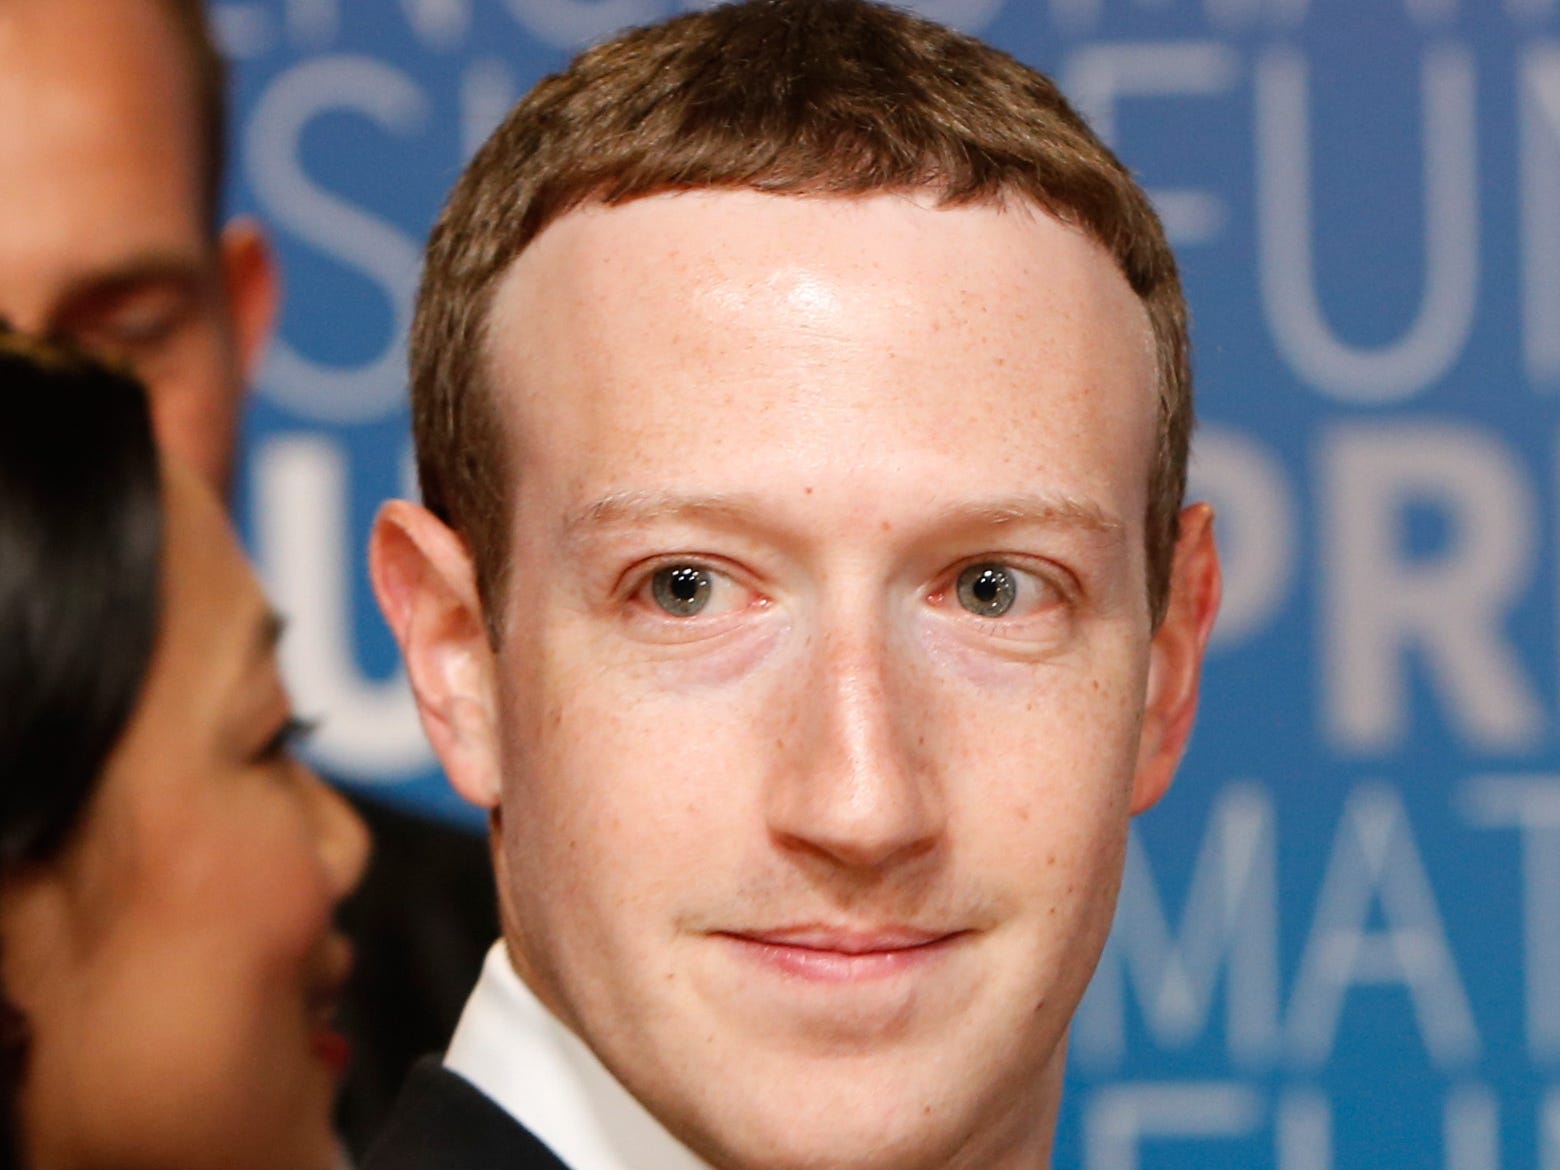 Mái tóc của ông chủ Facebook là chủ đề bàn tán sôi nổi trong thời gian vừa qua (Nguồn: BI)